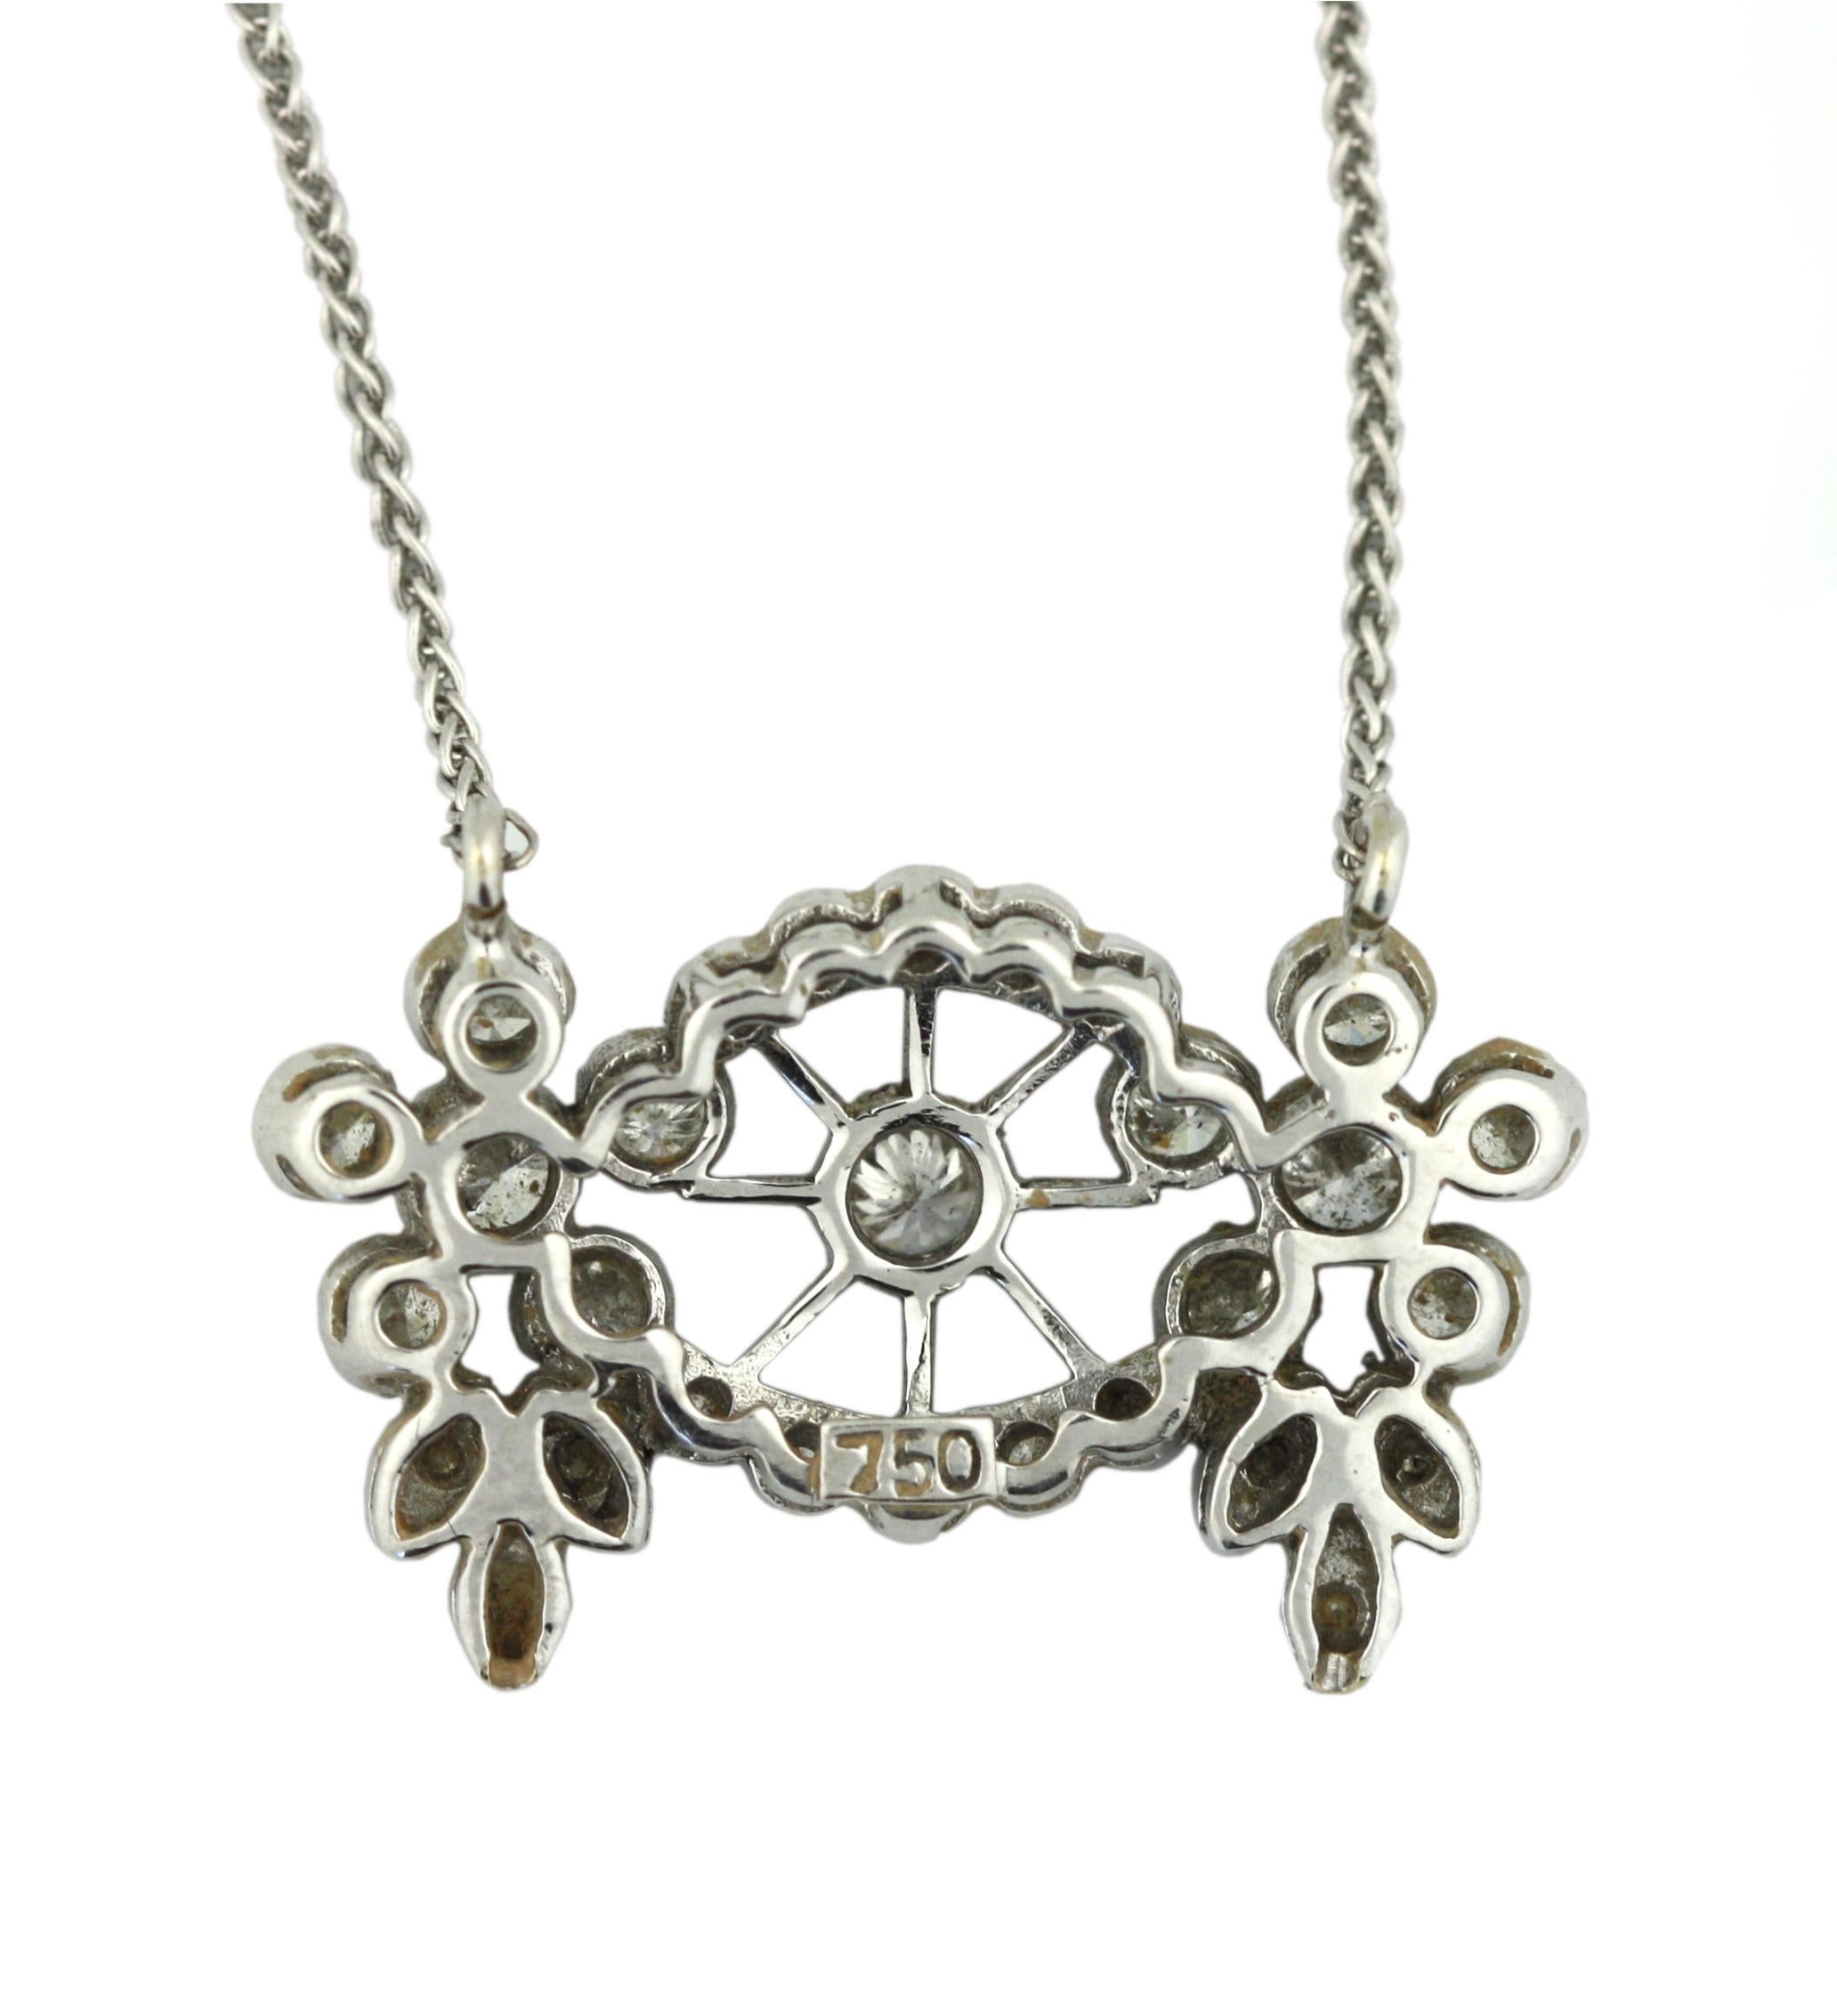 Collier en or blanc 18 carats et diamants 
Design/One : design circulaire de diamants sertis en pavé. 
Le diamant est entouré d'une grappe florale de diamants ronds et ovales.
